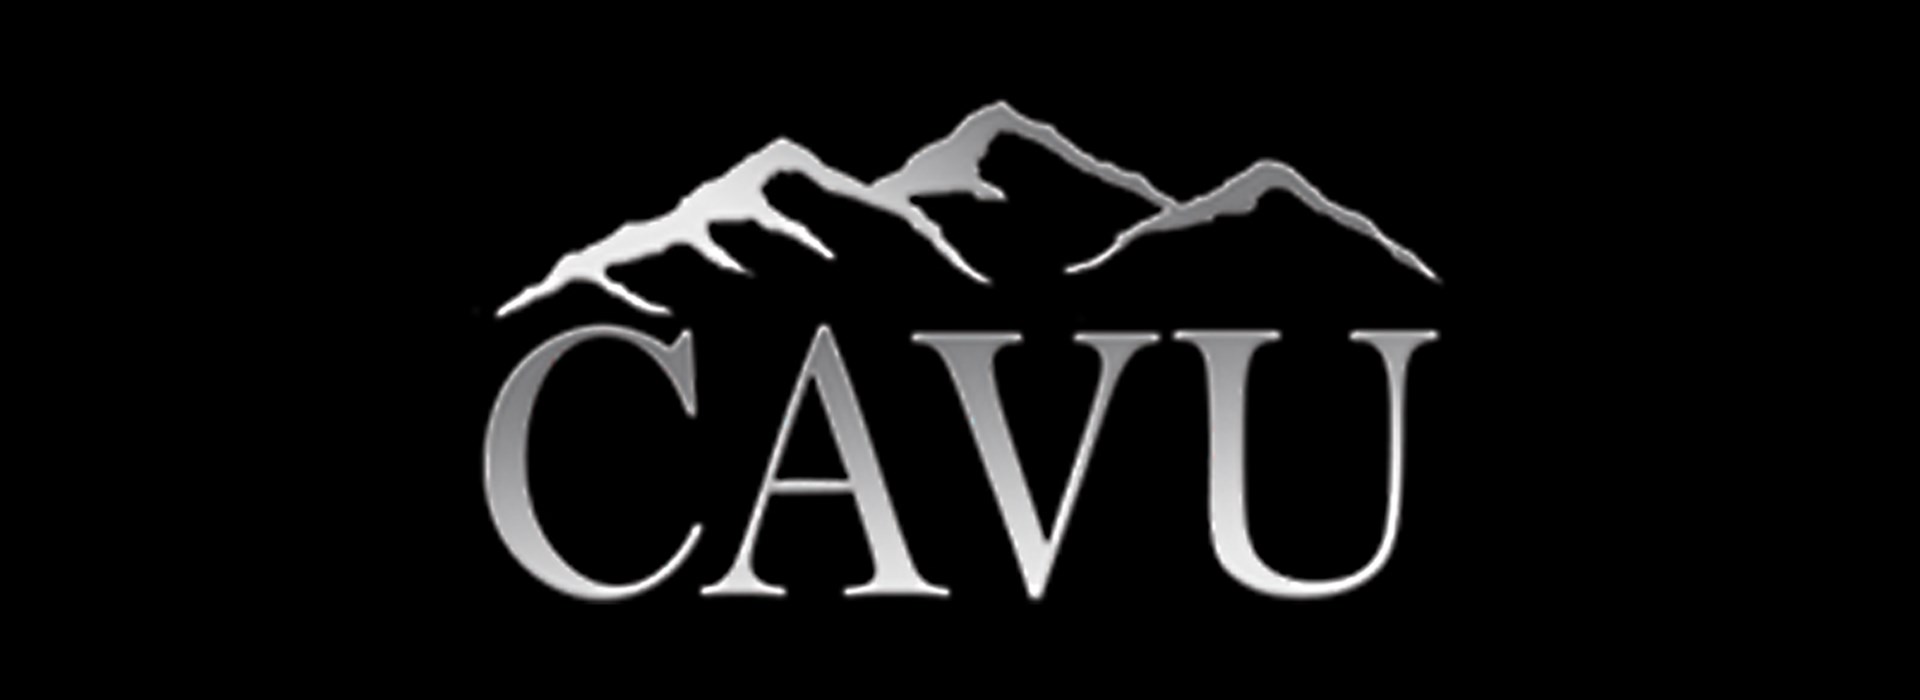 CAVU Image